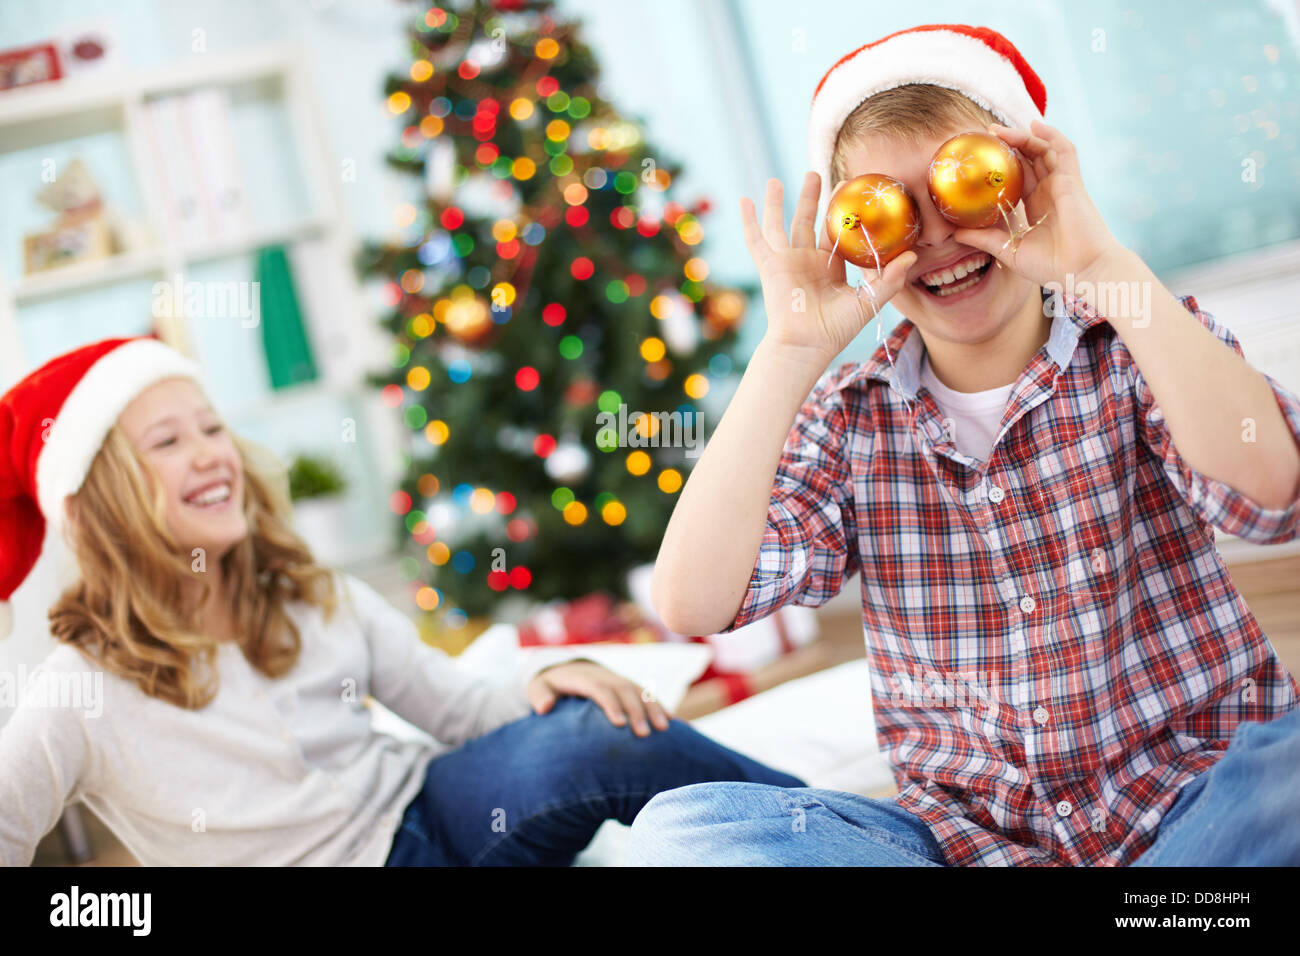 Ritratto di felice lad azienda giocattolo decorativi sfere dai suoi occhi e ridere della sera di Natale Foto Stock